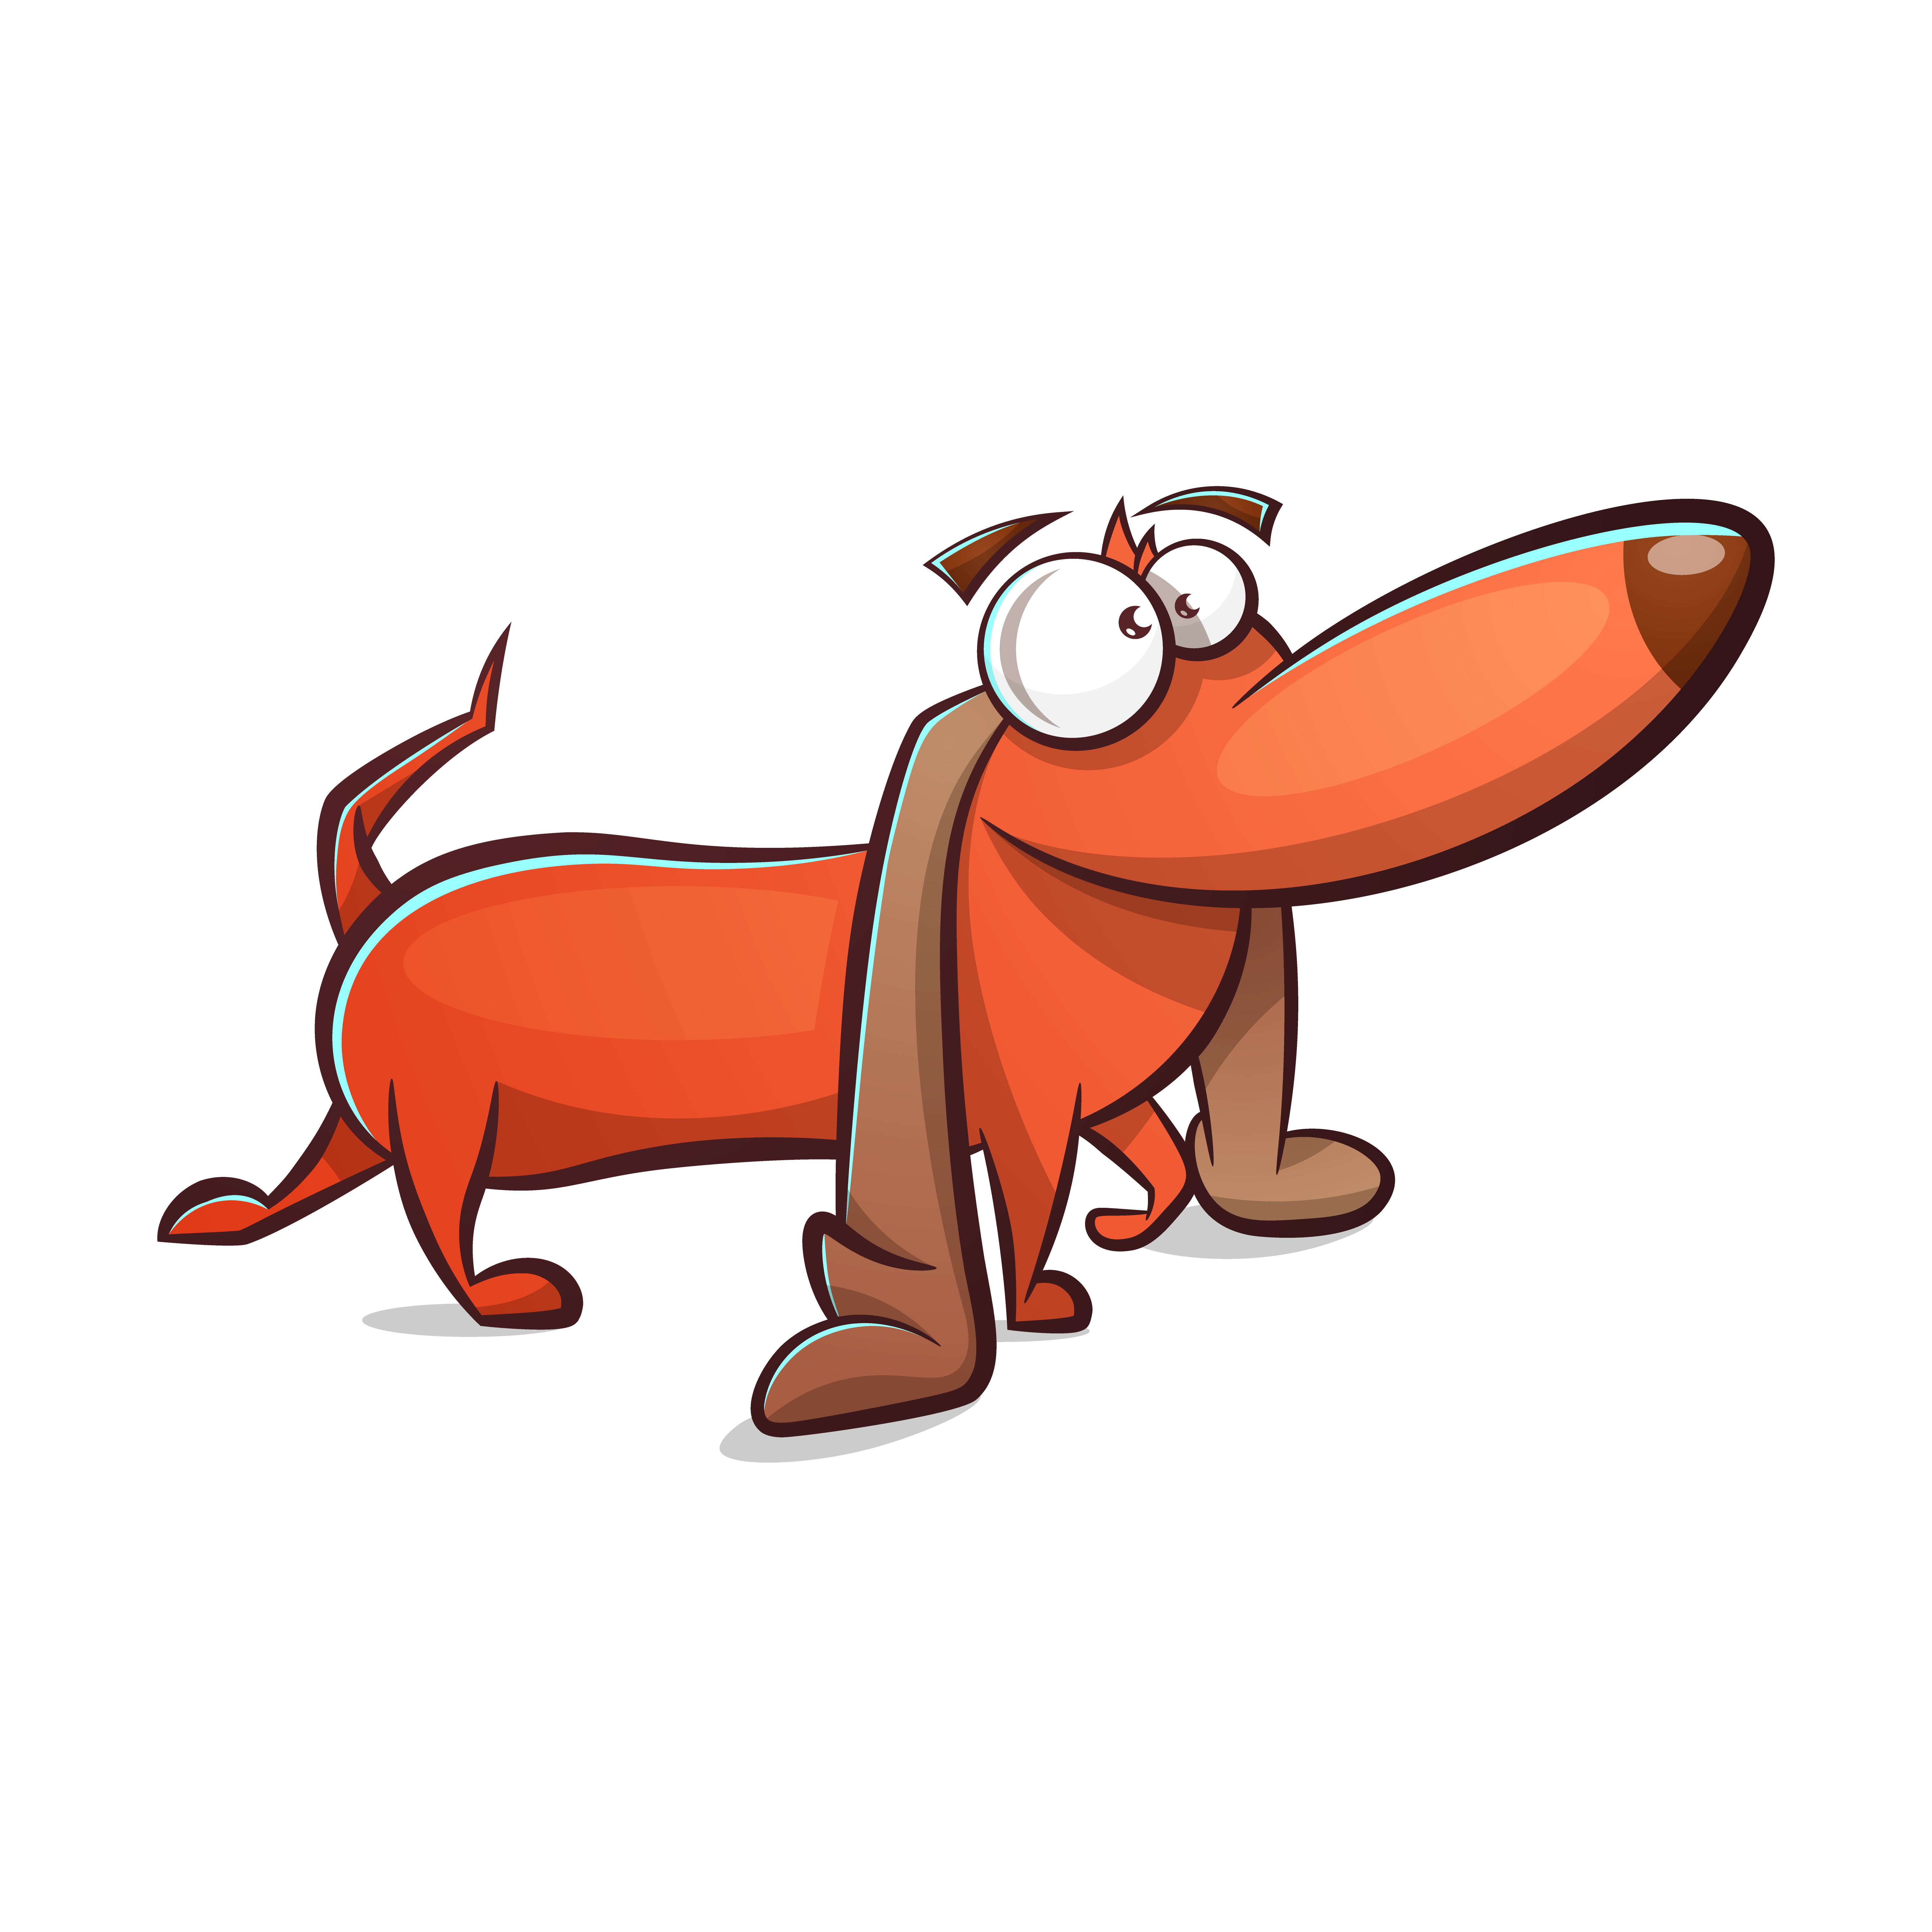 Funny, cute dog cartoon. - Download Free Vectors, Clipart ...